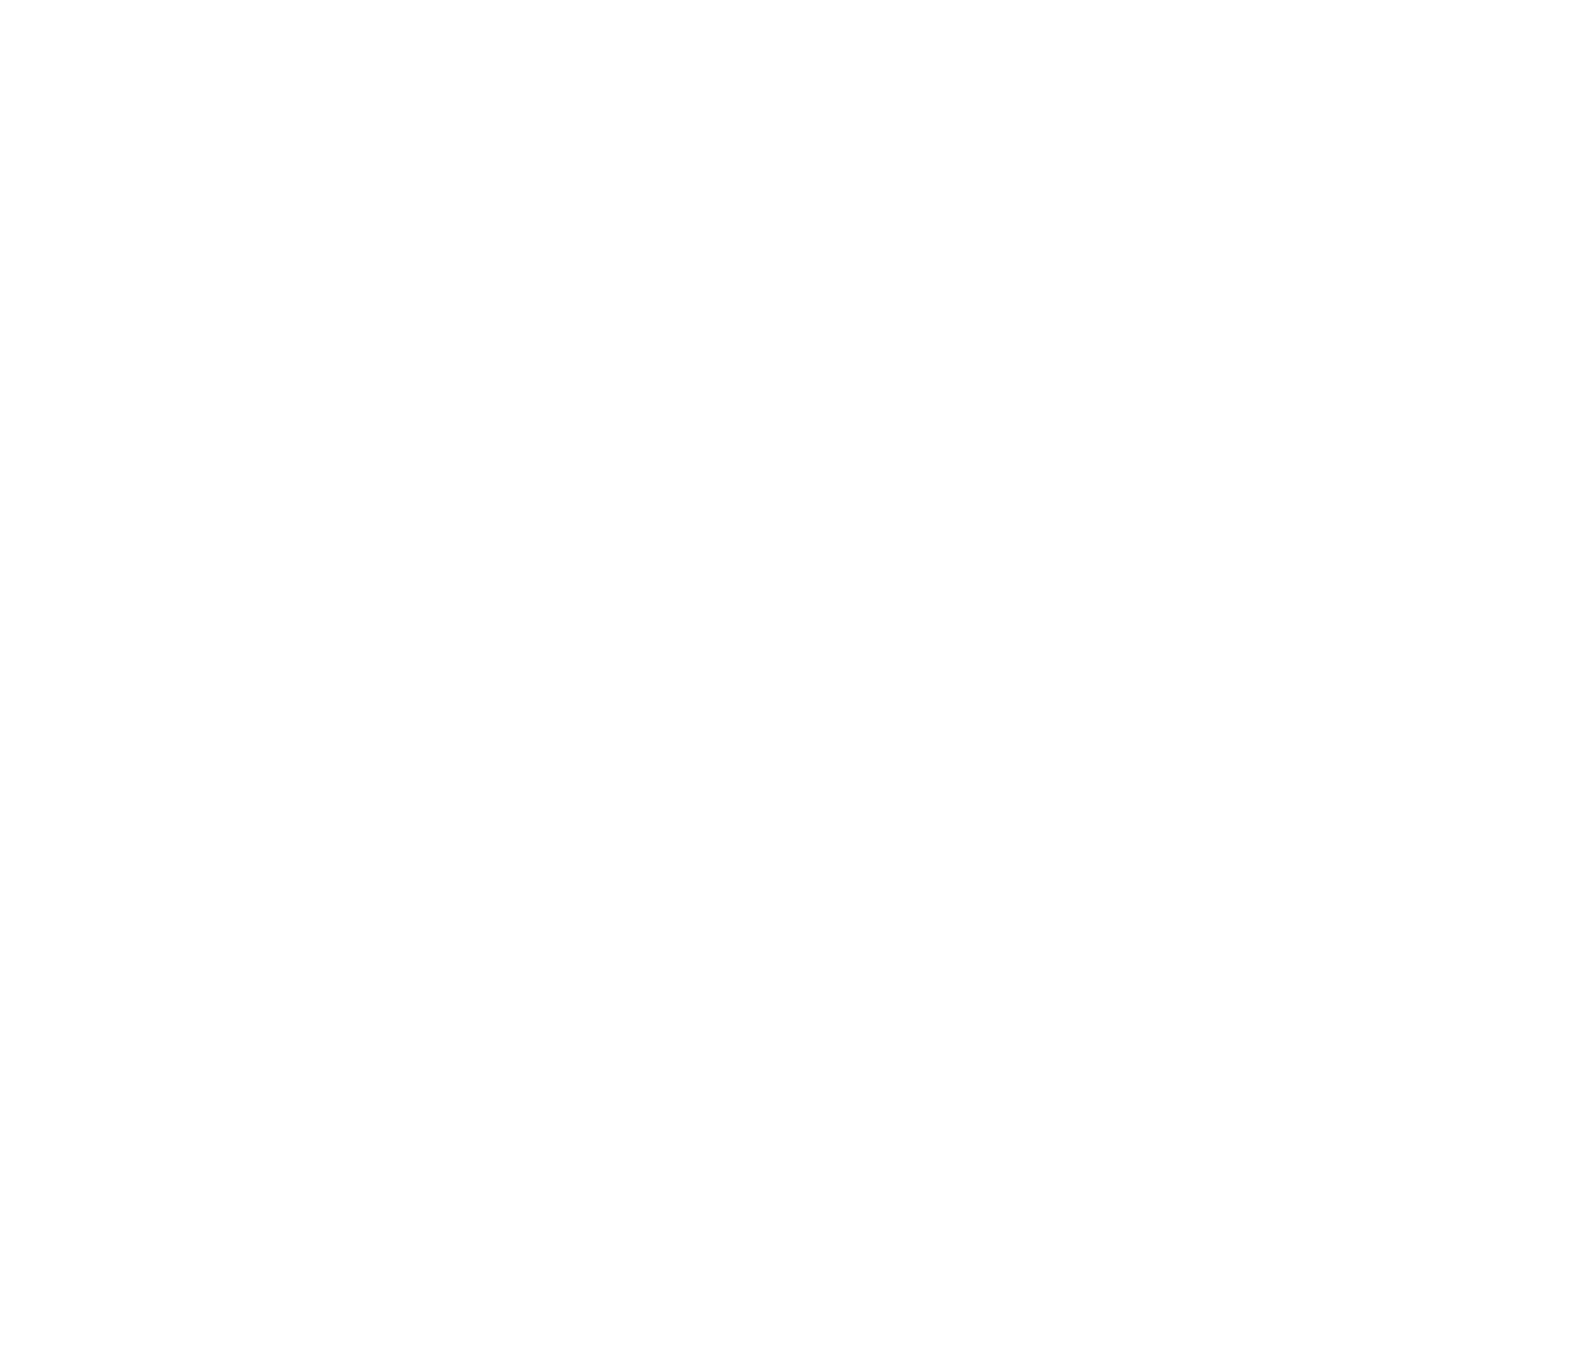 Triterras logo grand pour les fonds sombres (PNG transparent)